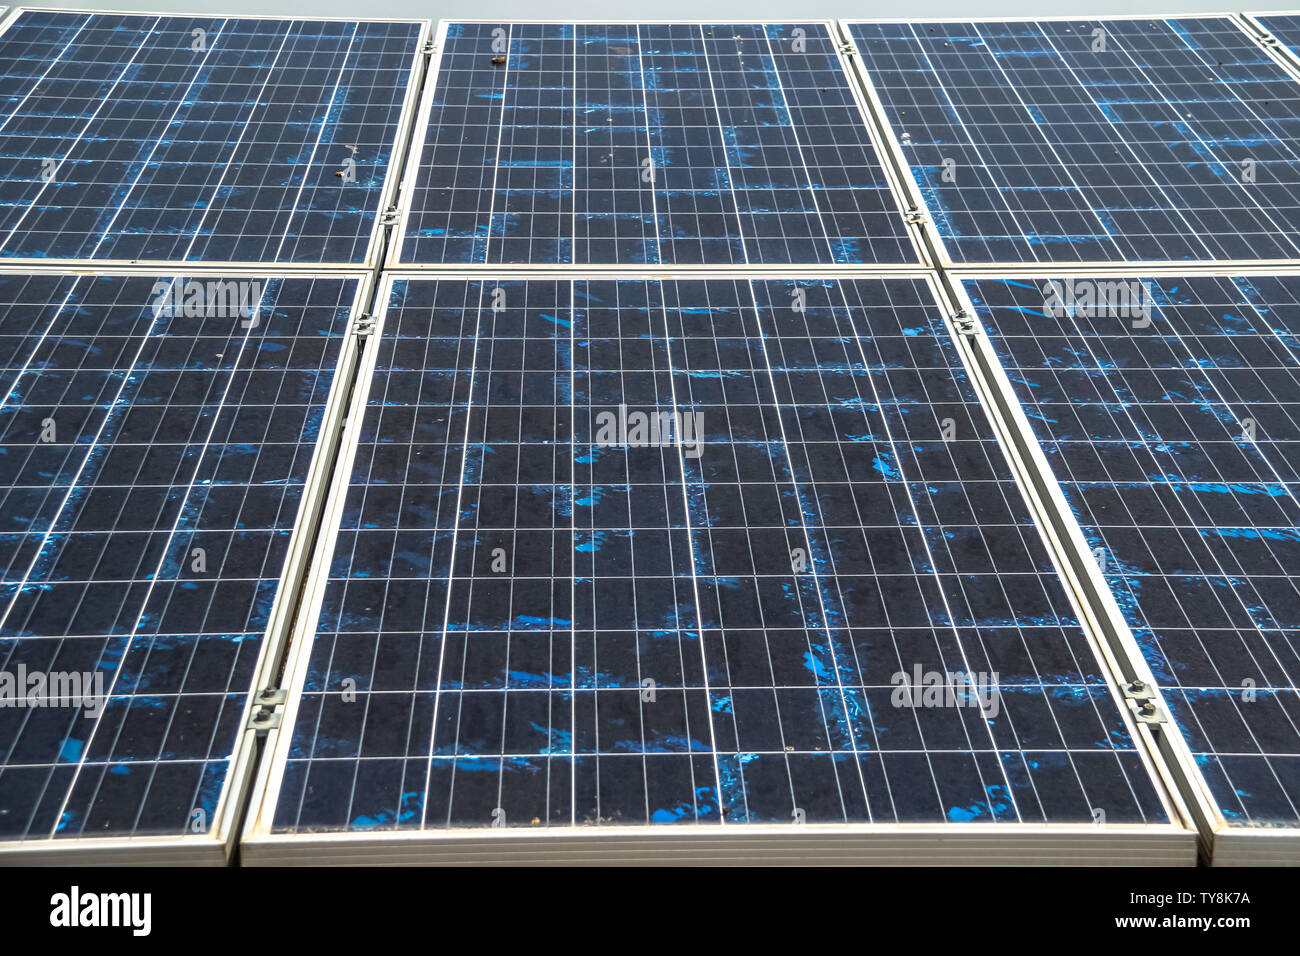 Eco Power, Photovoltaik, alternative Stromquelle, Sonnenkollektoren Stromerzeugung saubere Energie Stockfoto